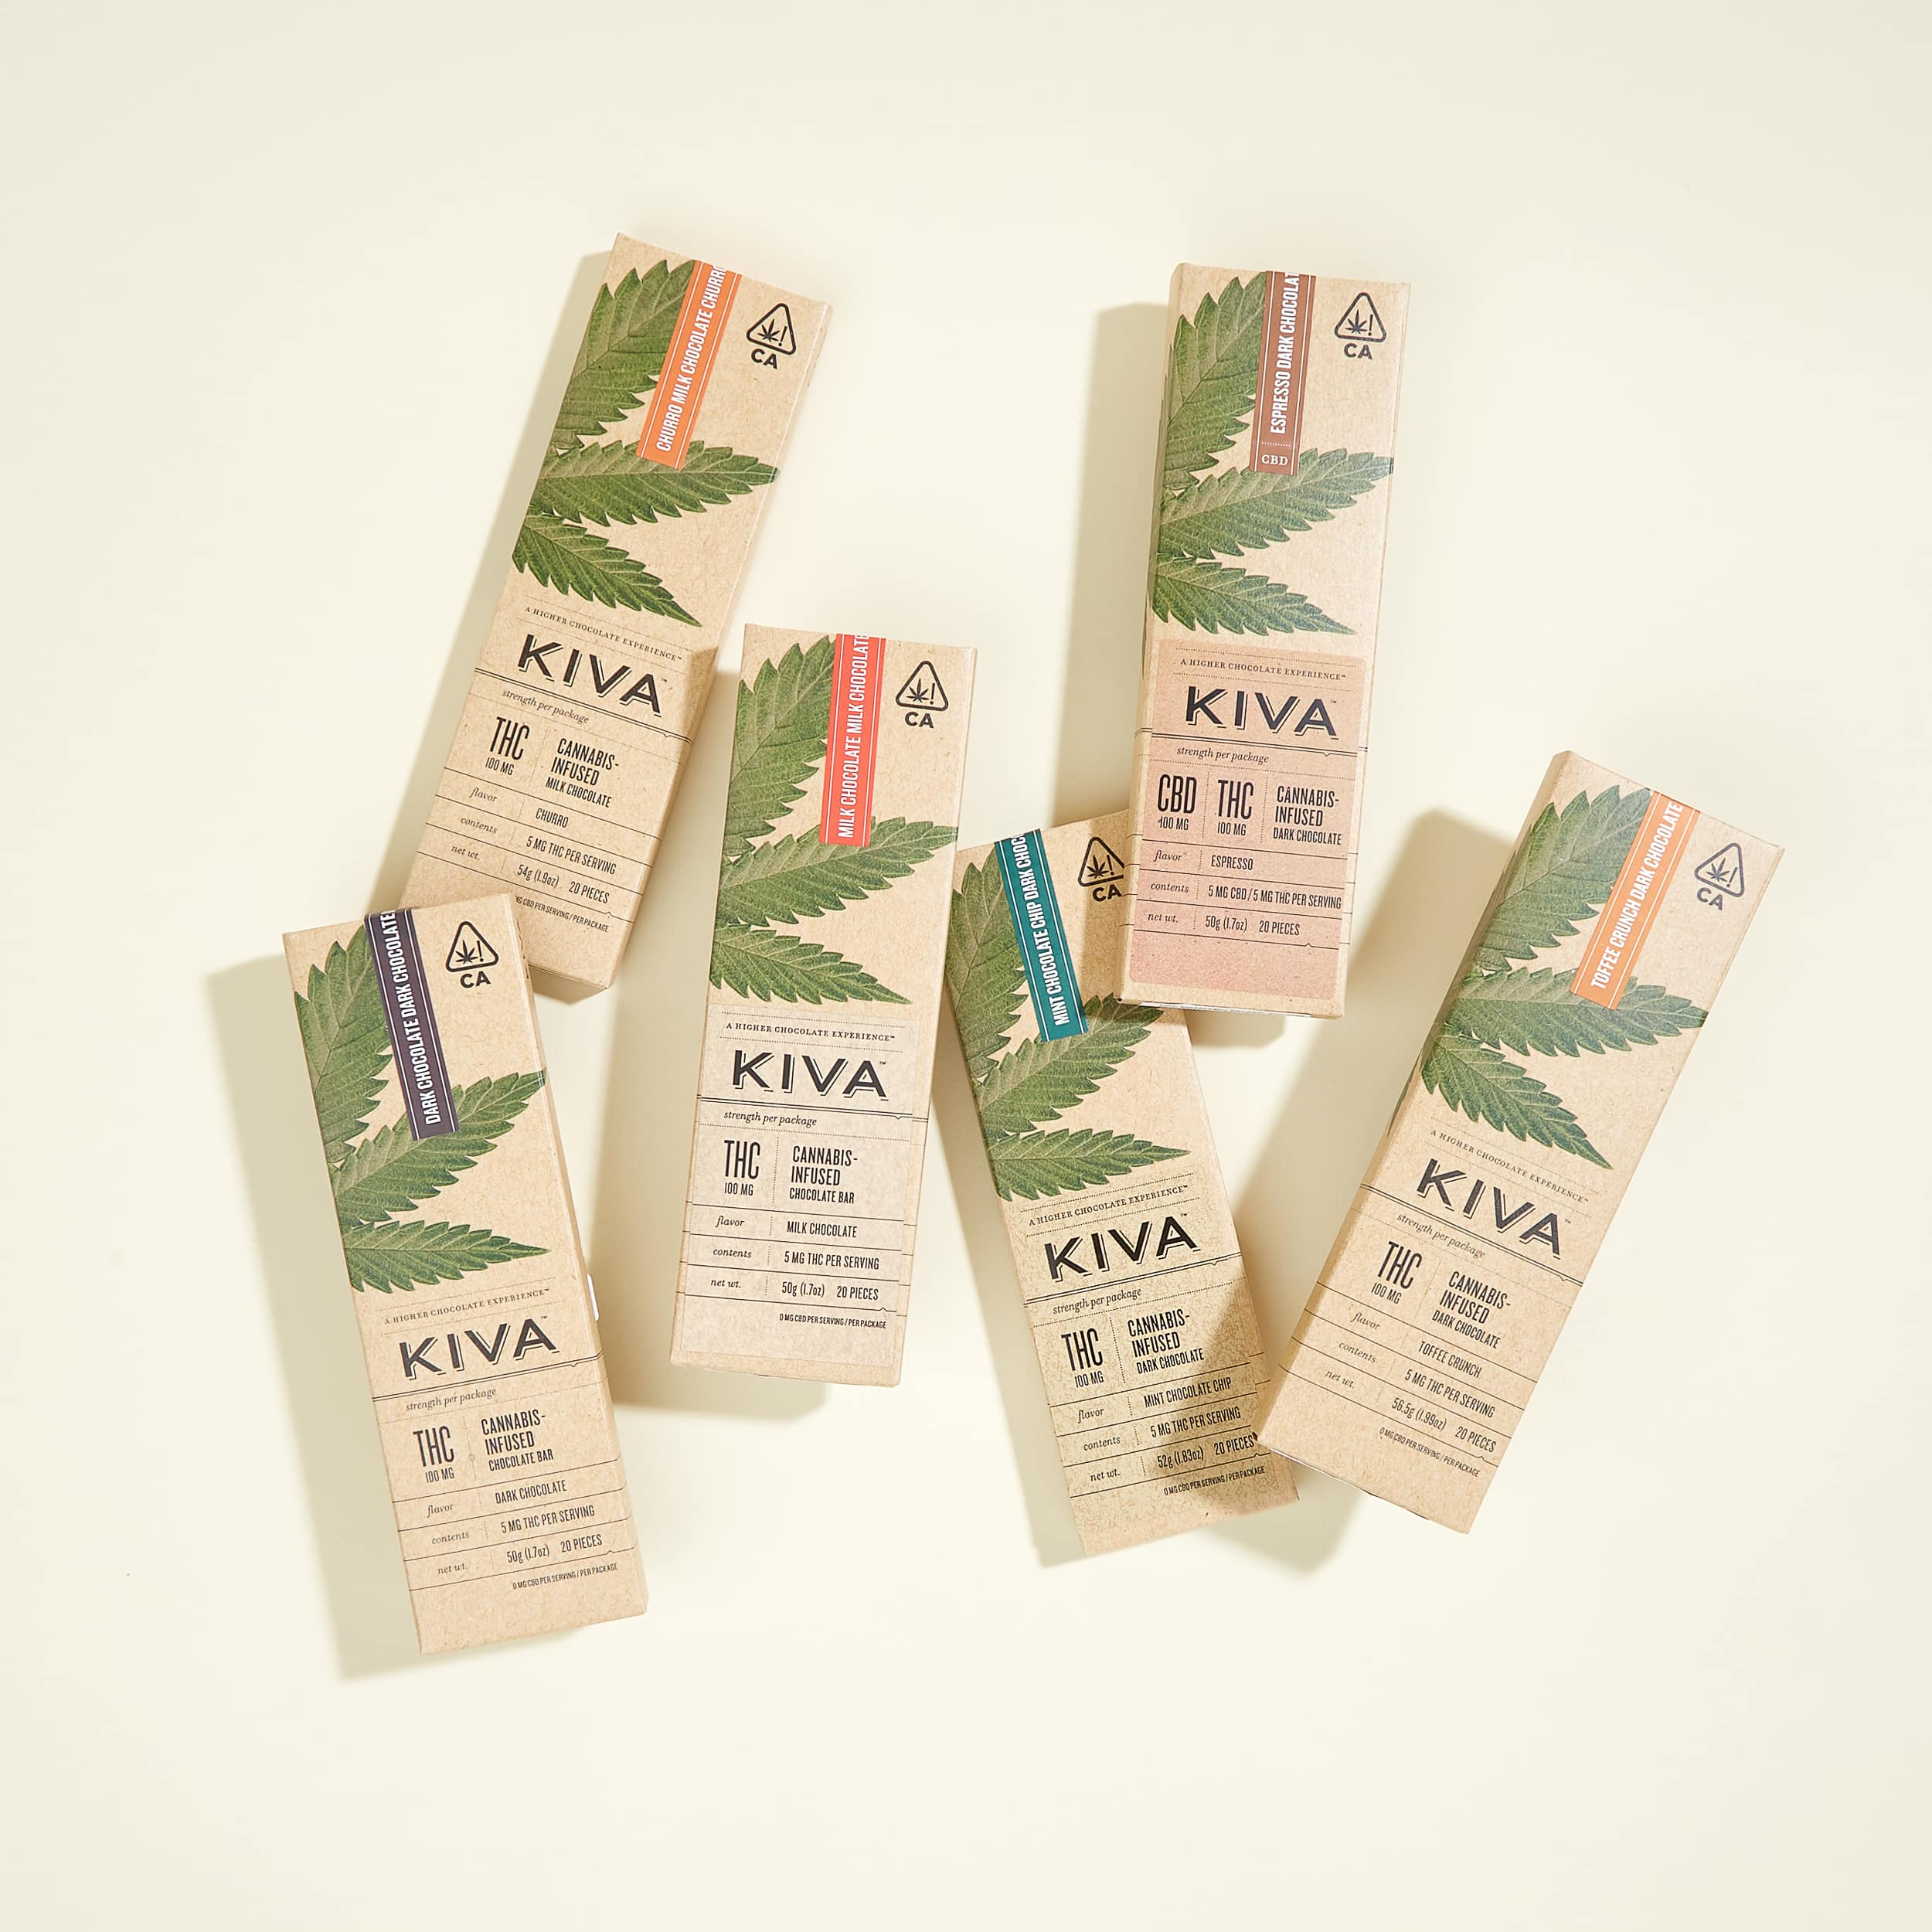 KIVA Cannabis Infused Chocolate